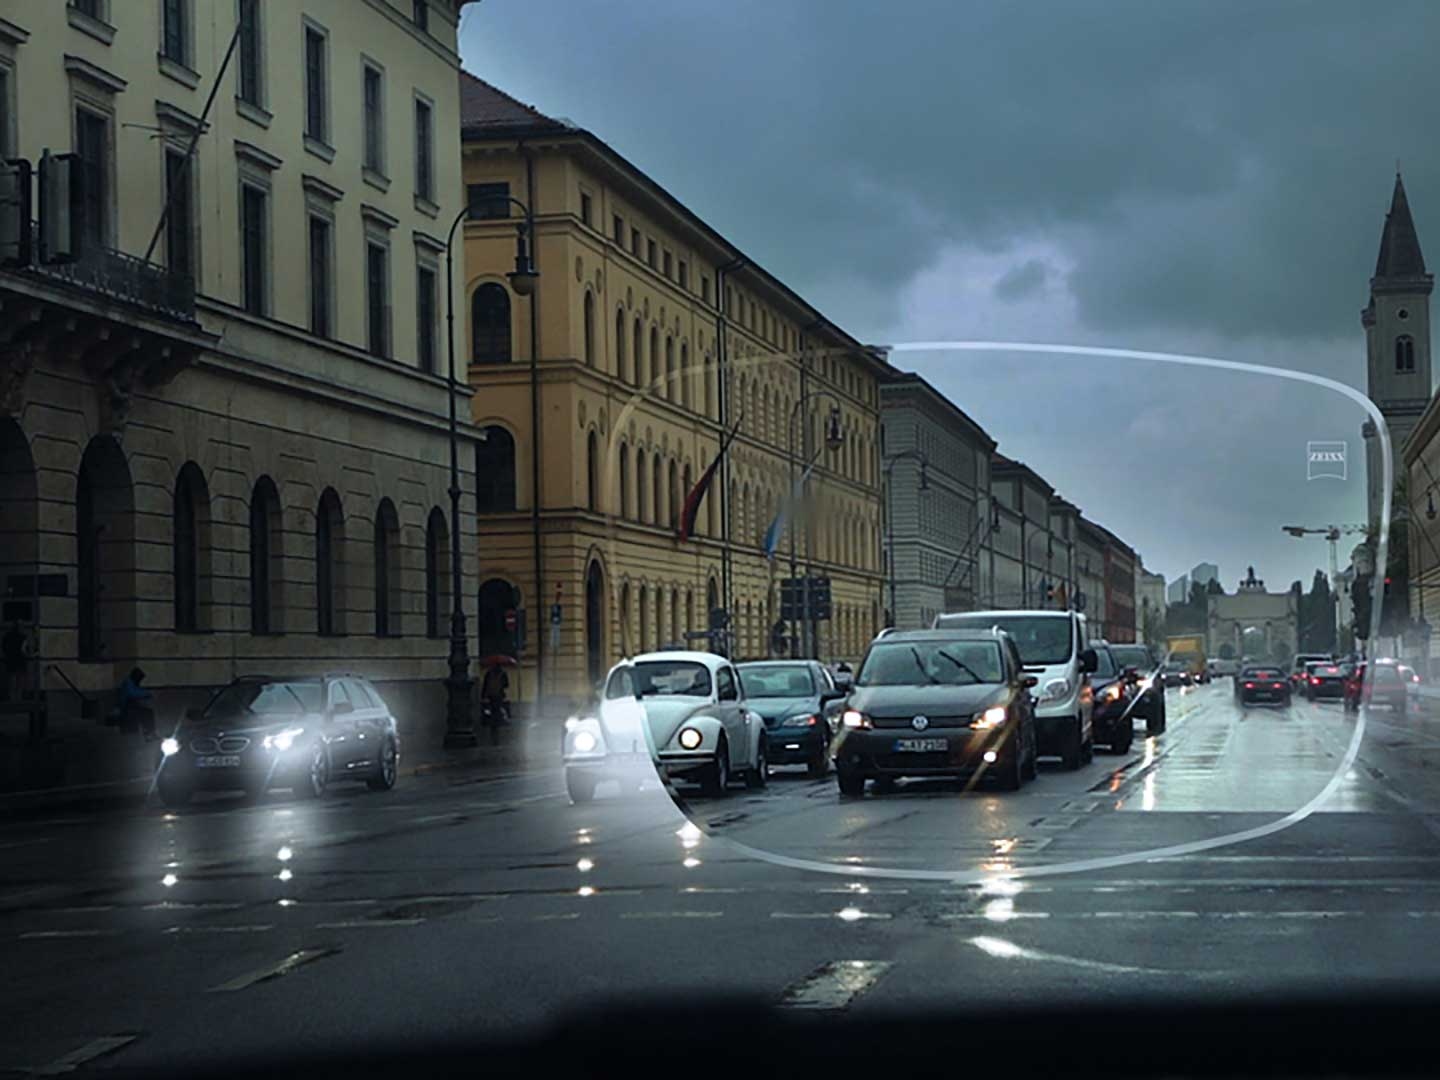 L'immagine mostra i problemi visibilità in condizioni di scarsa illuminazione su una strada. Il punto di vista è l'interno di un'auto visto attraverso le lenti per occhiali. 